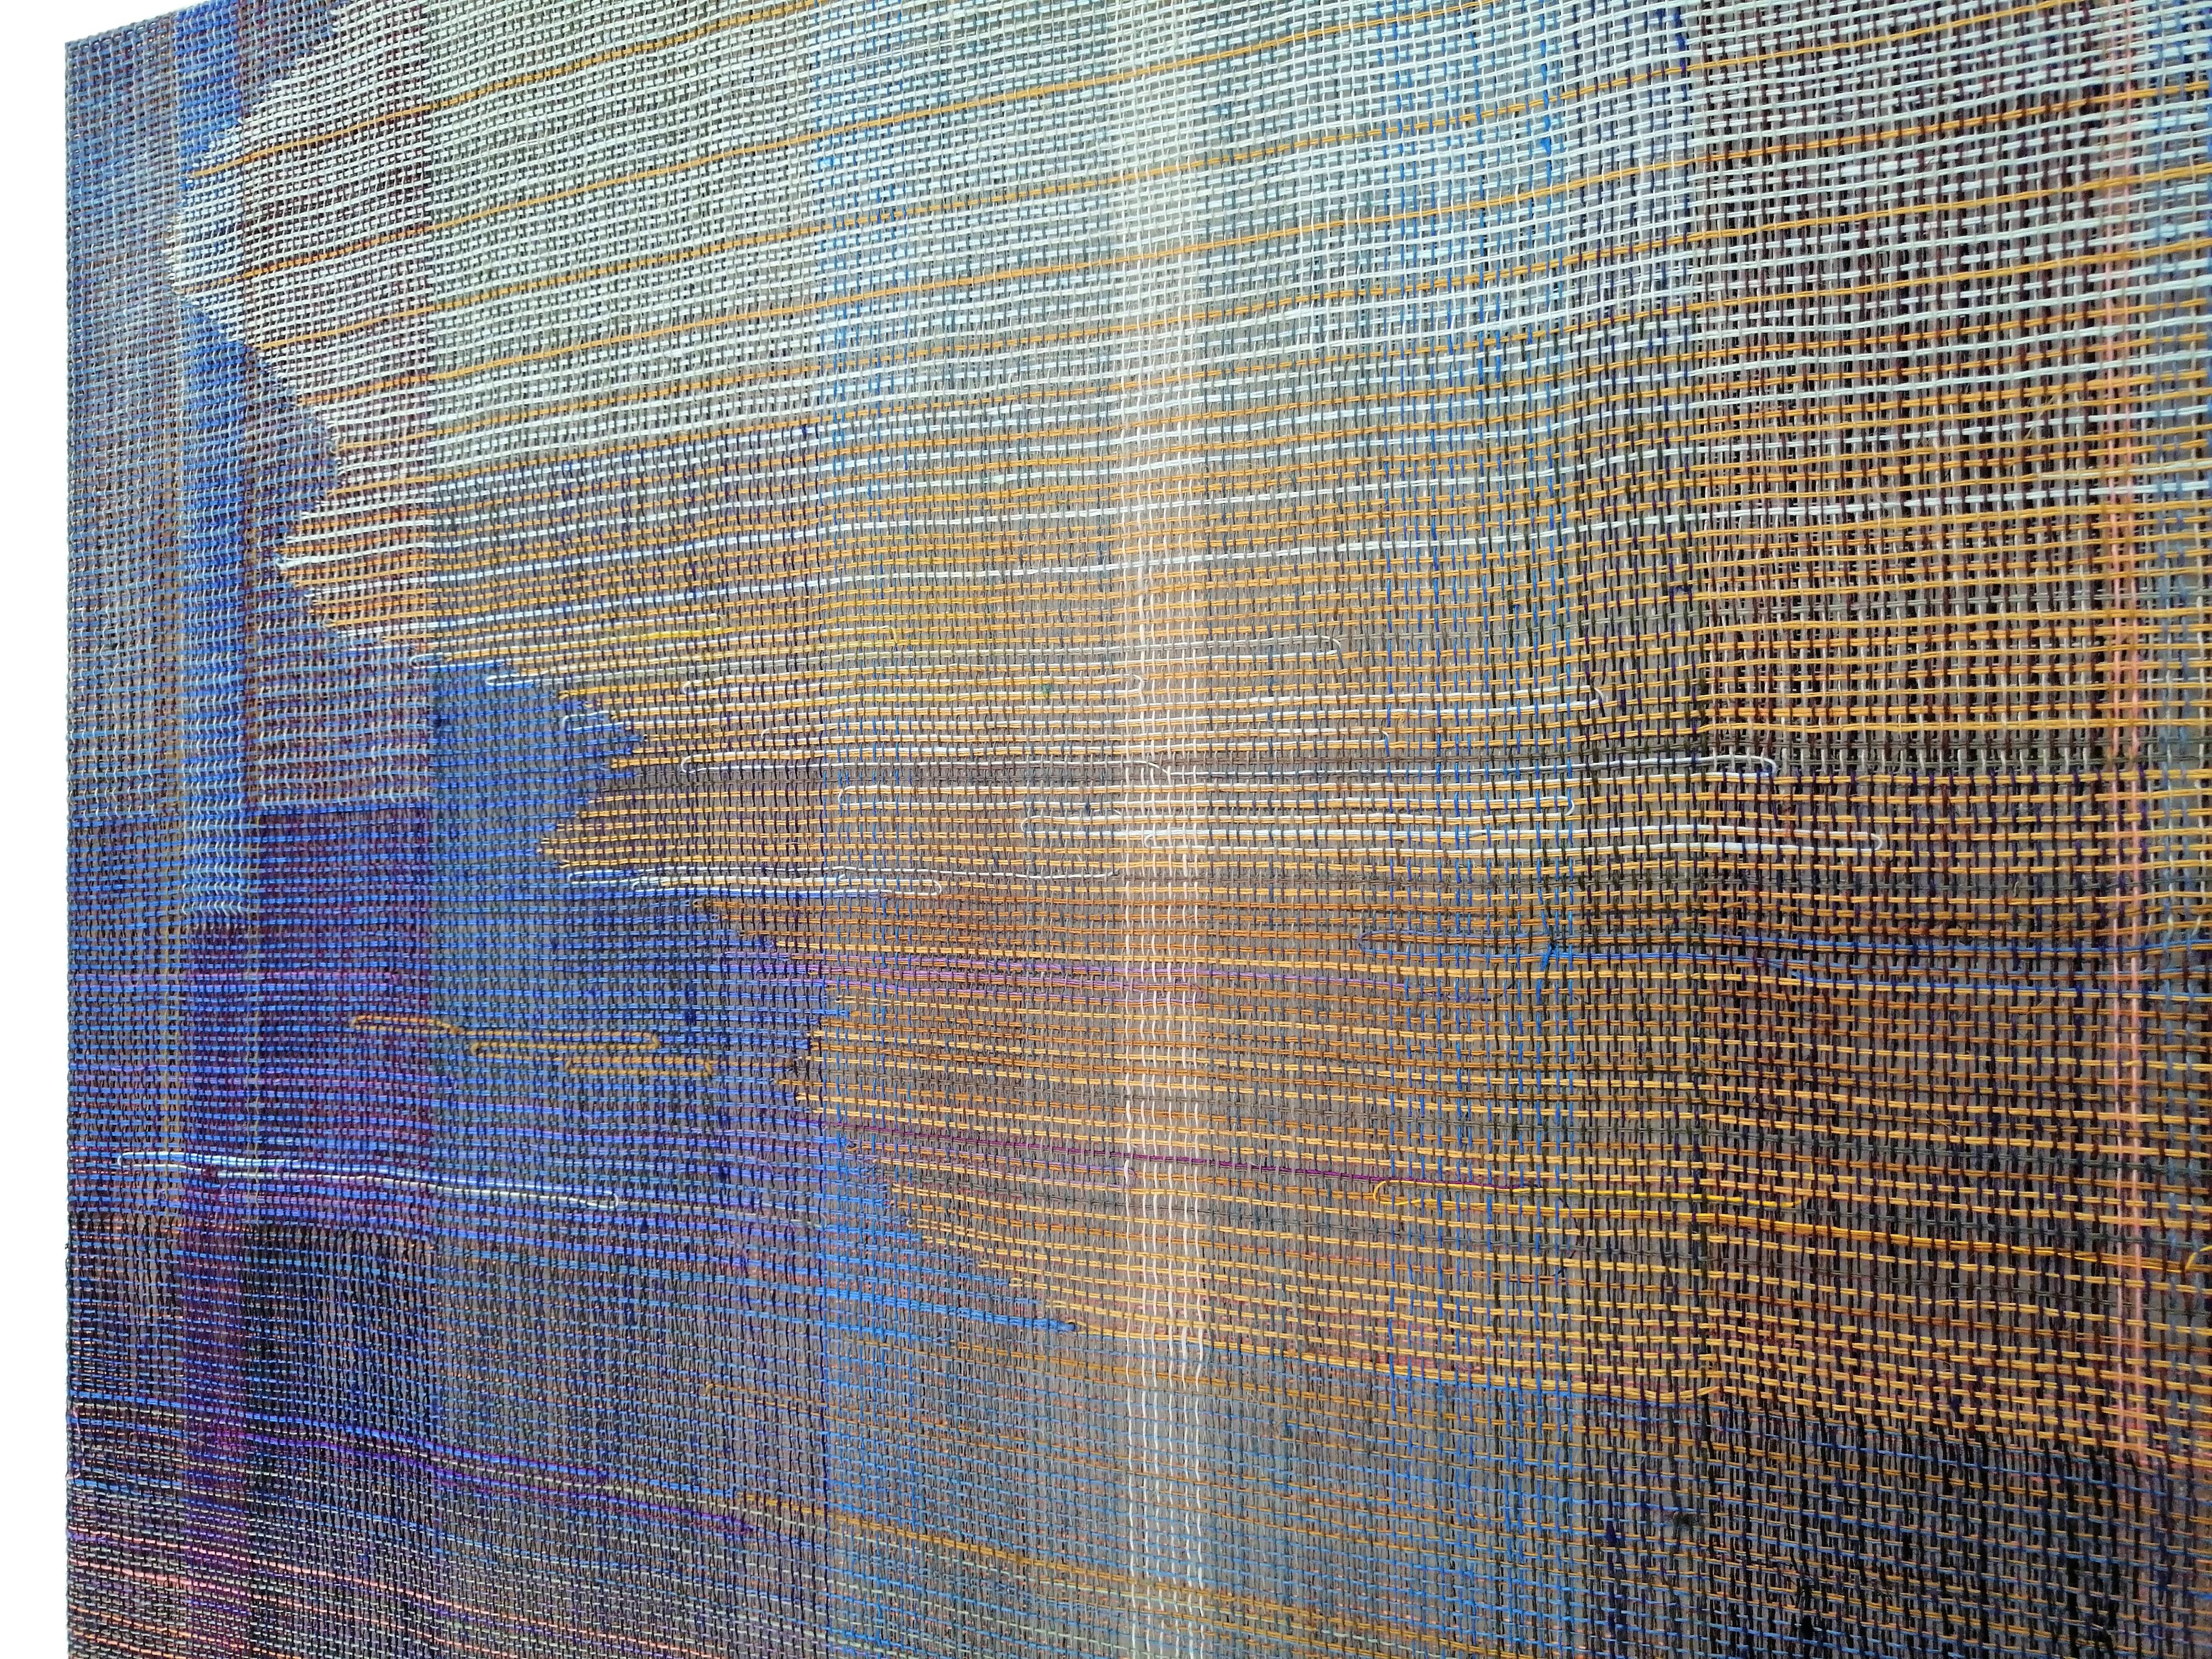 Meadow - Paysage abstrait, œuvre d'art contemporaine tissée et peinte - Contemporain Painting par Marta Pokojowczyk